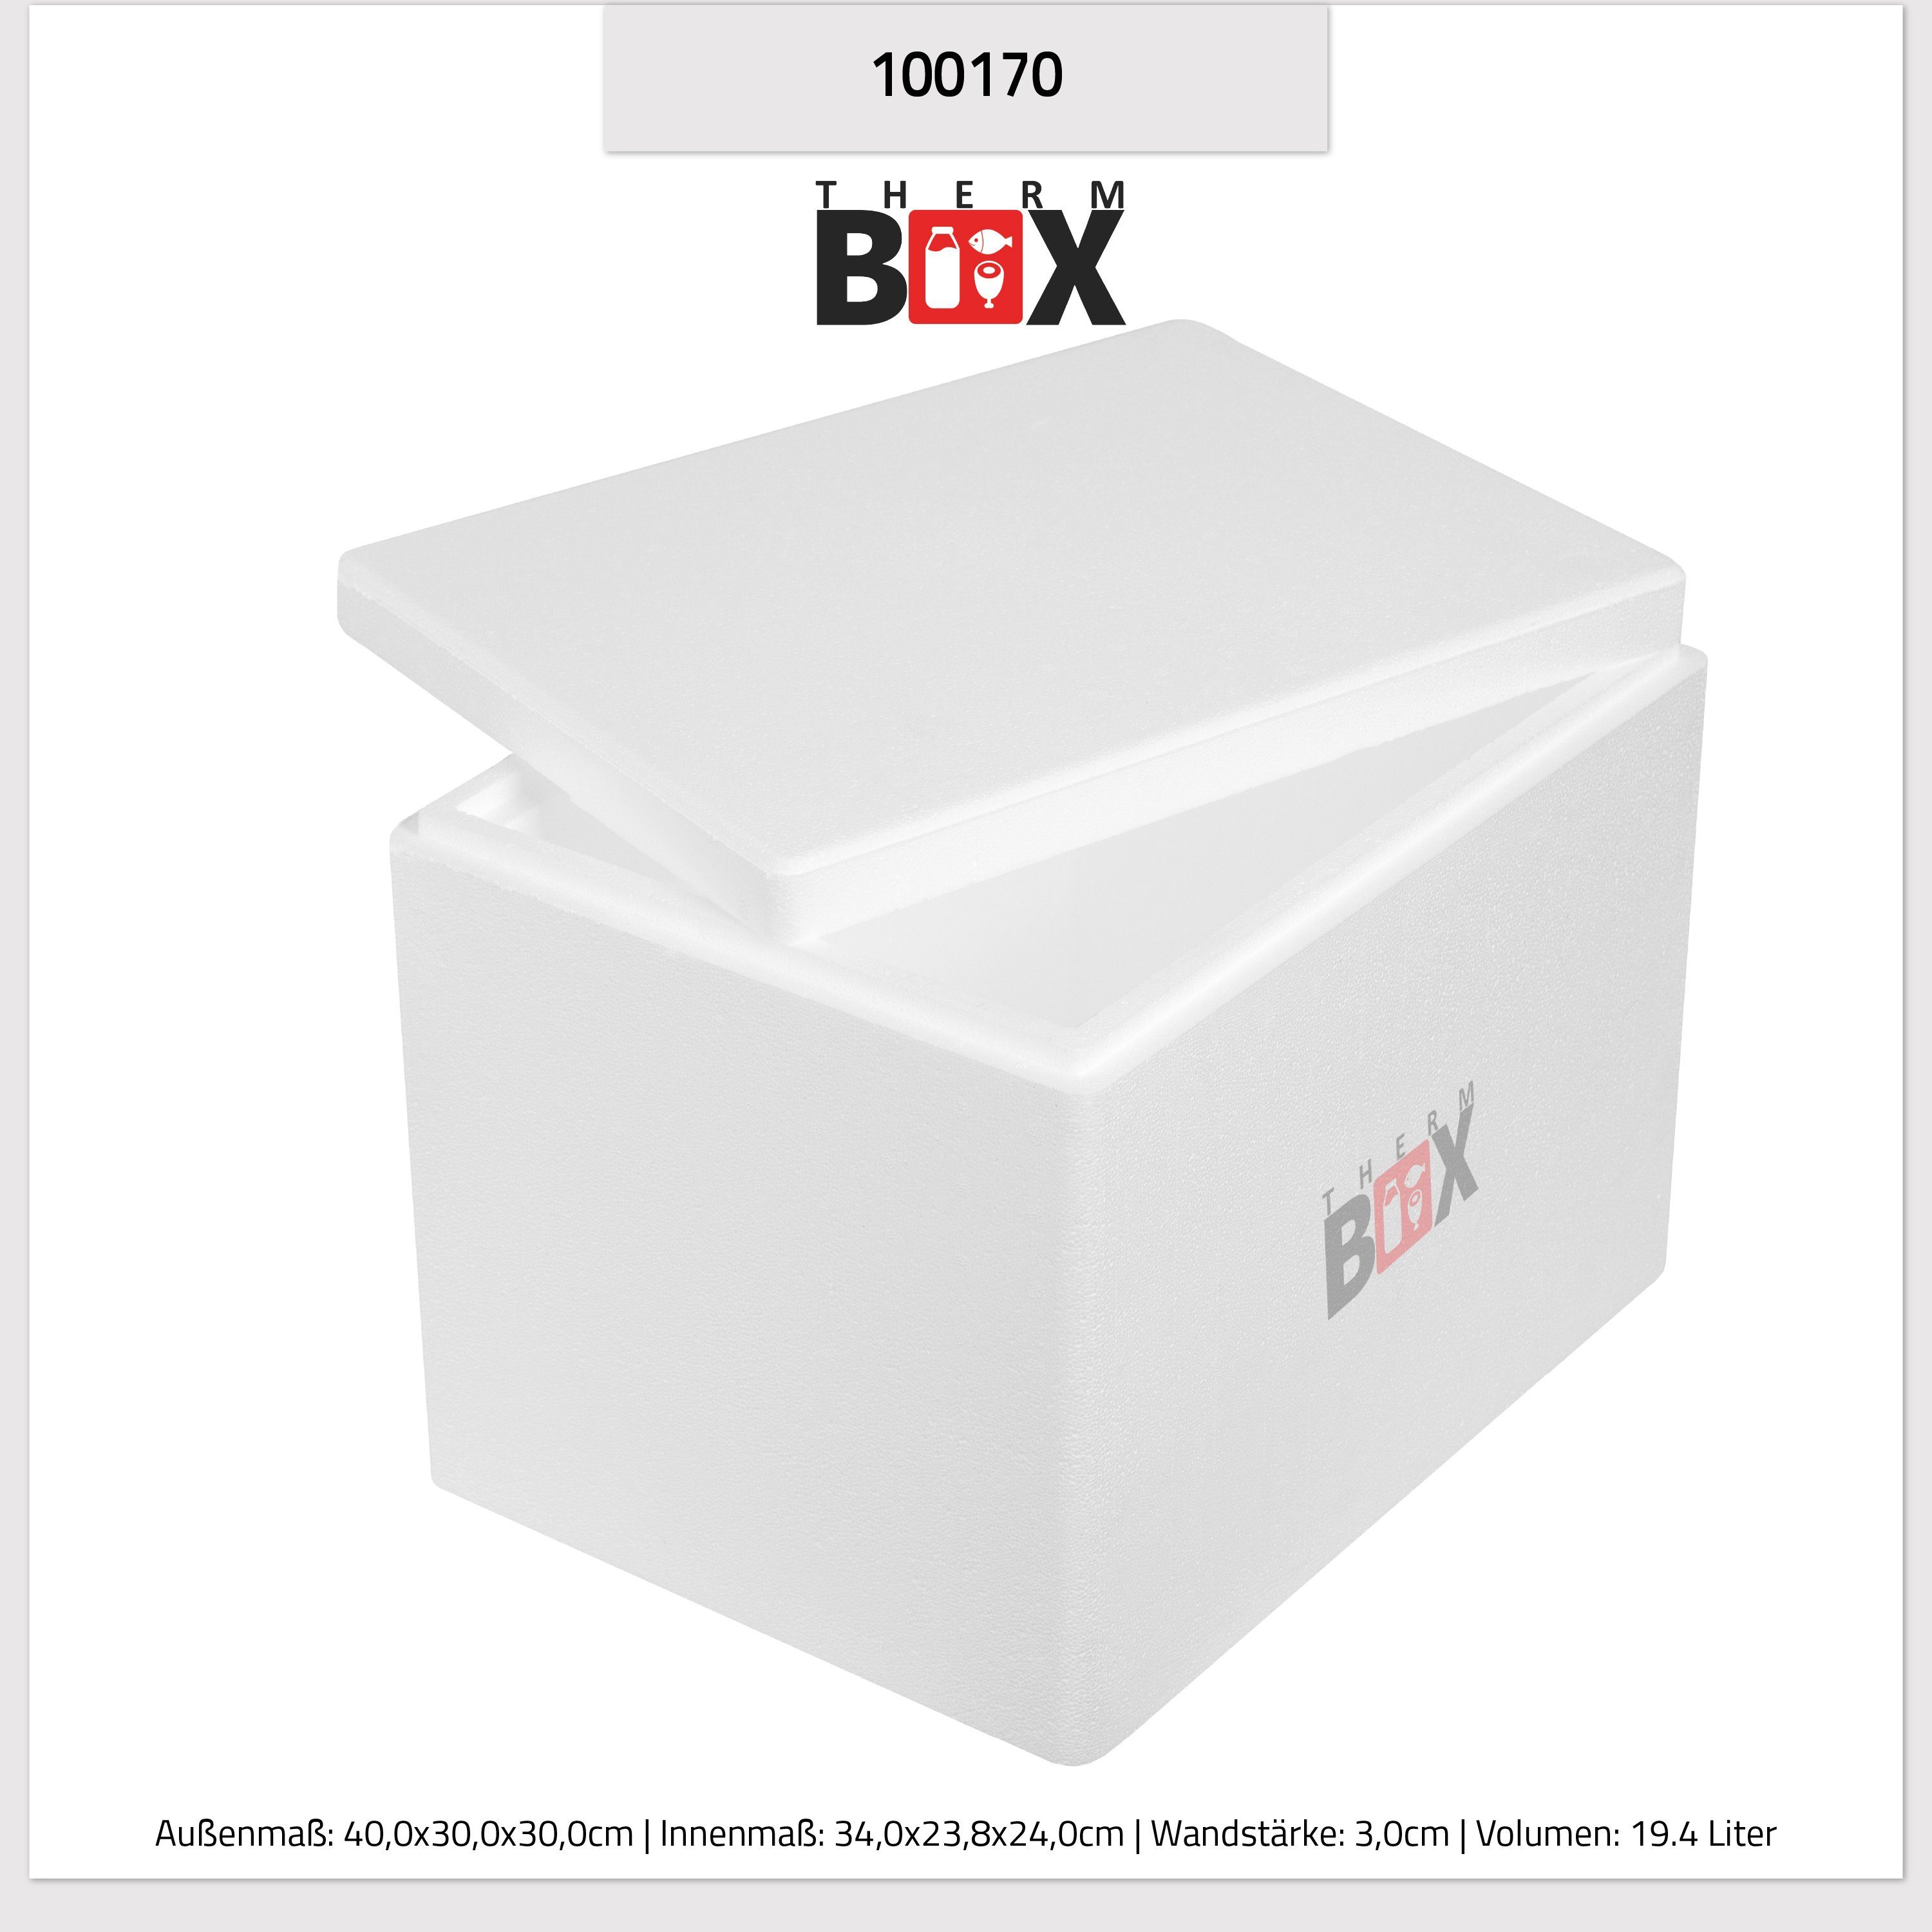 mit Box 3cm (1, 19,4L, 34x23x24cm Kühlbox Wiederverwendbar Karton), THERM-BOX 0-tlg., Thermobox Innen: Thermobehälter Isolierbox im Warmhaltebox 19W Wand: Deckel Styroporbox Styropor-Verdichtet,